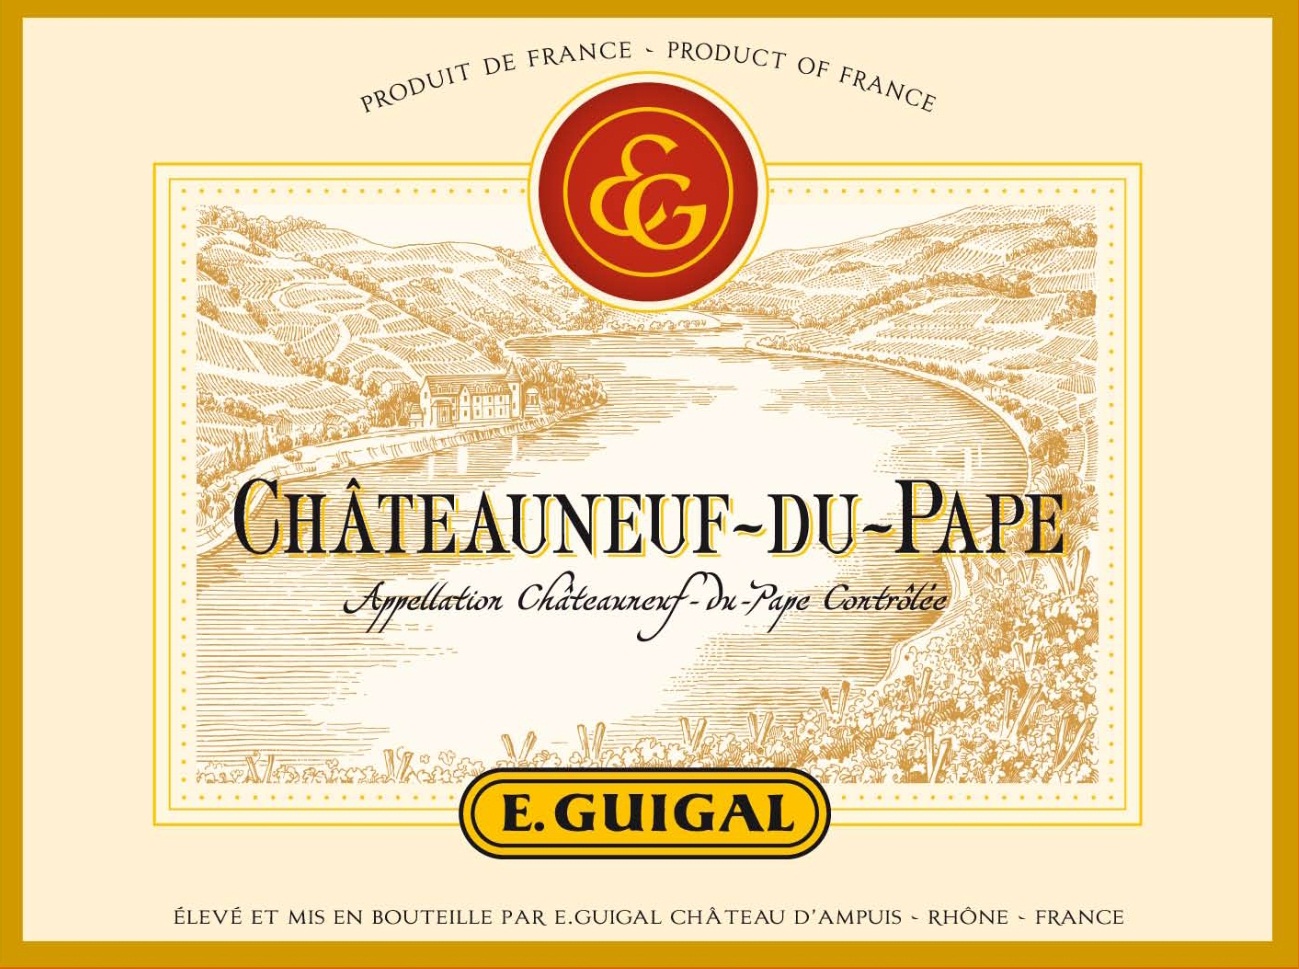 E. Guigal - Chateauneuf du Pape label